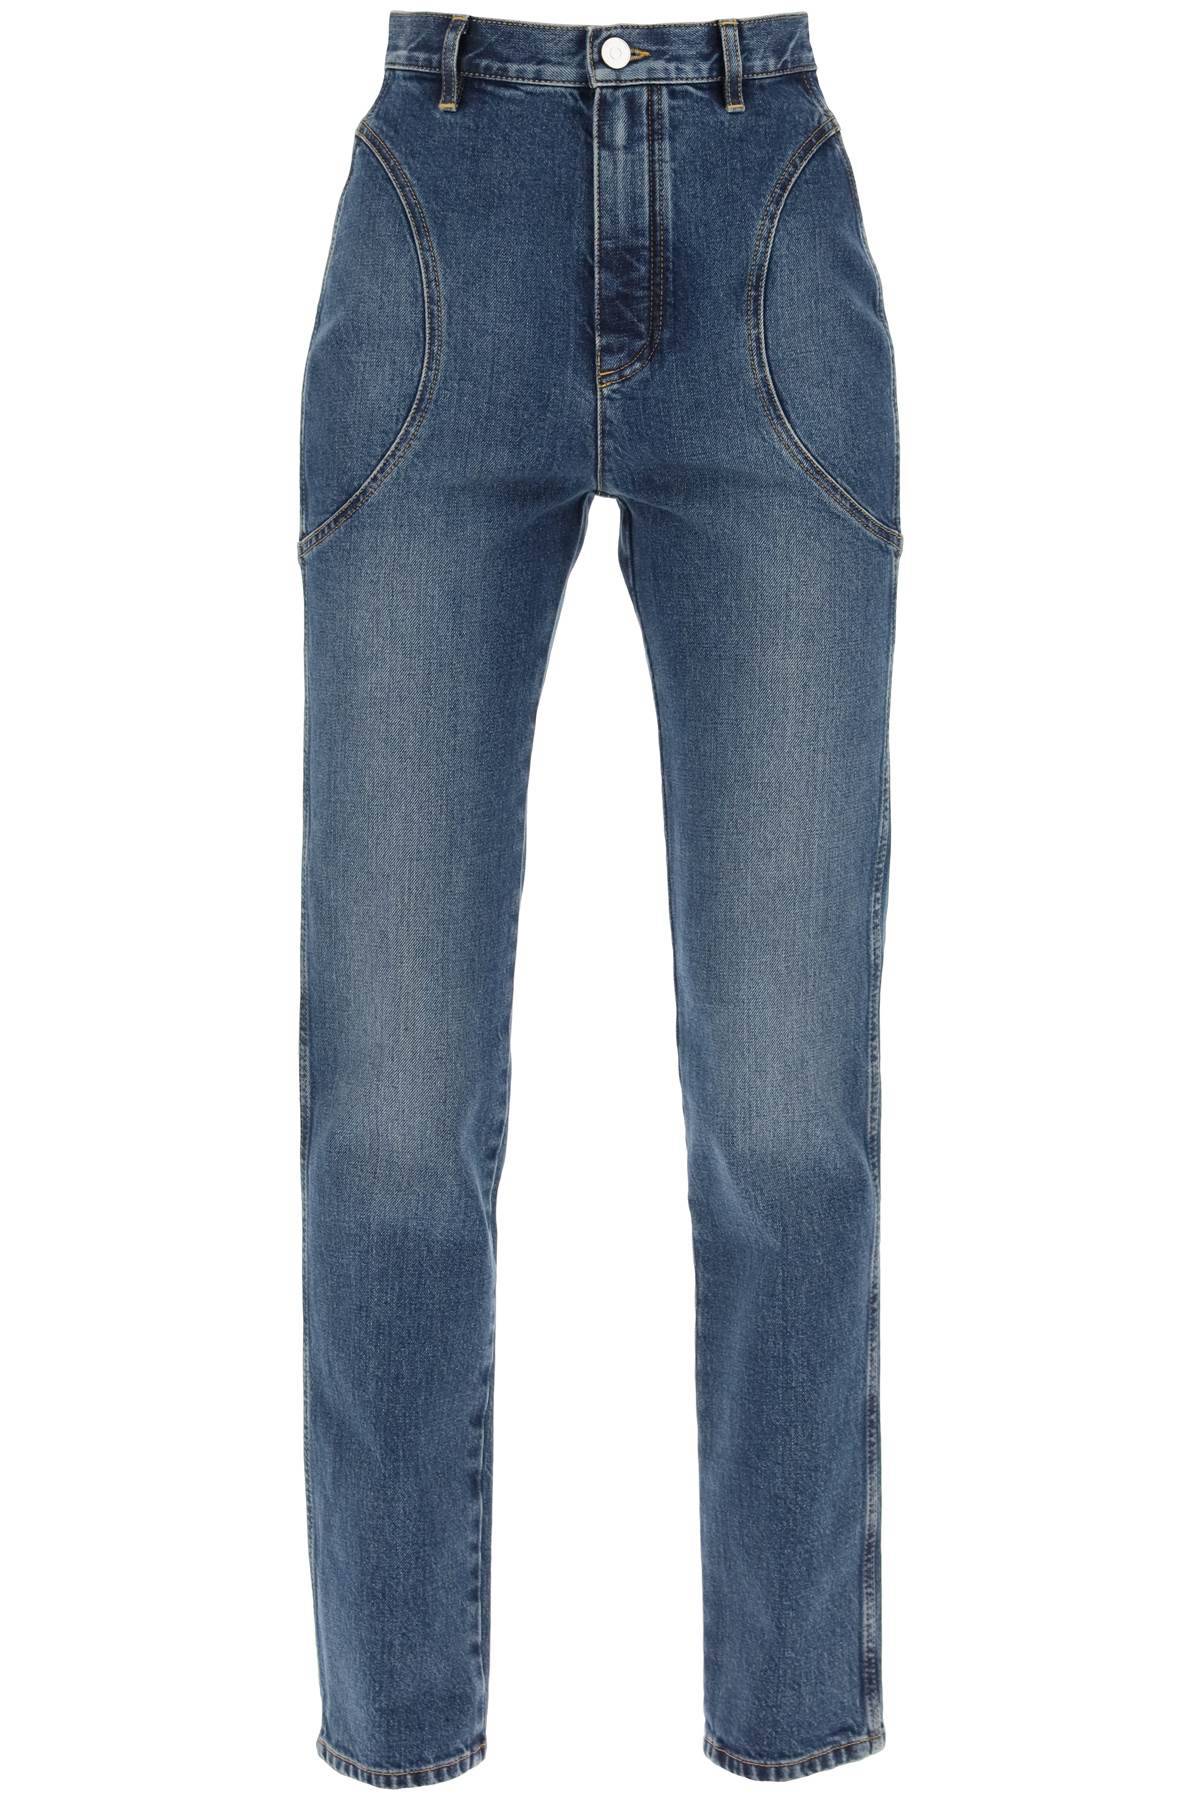 Alaïa ALAIA high-waisted slim fit jeans